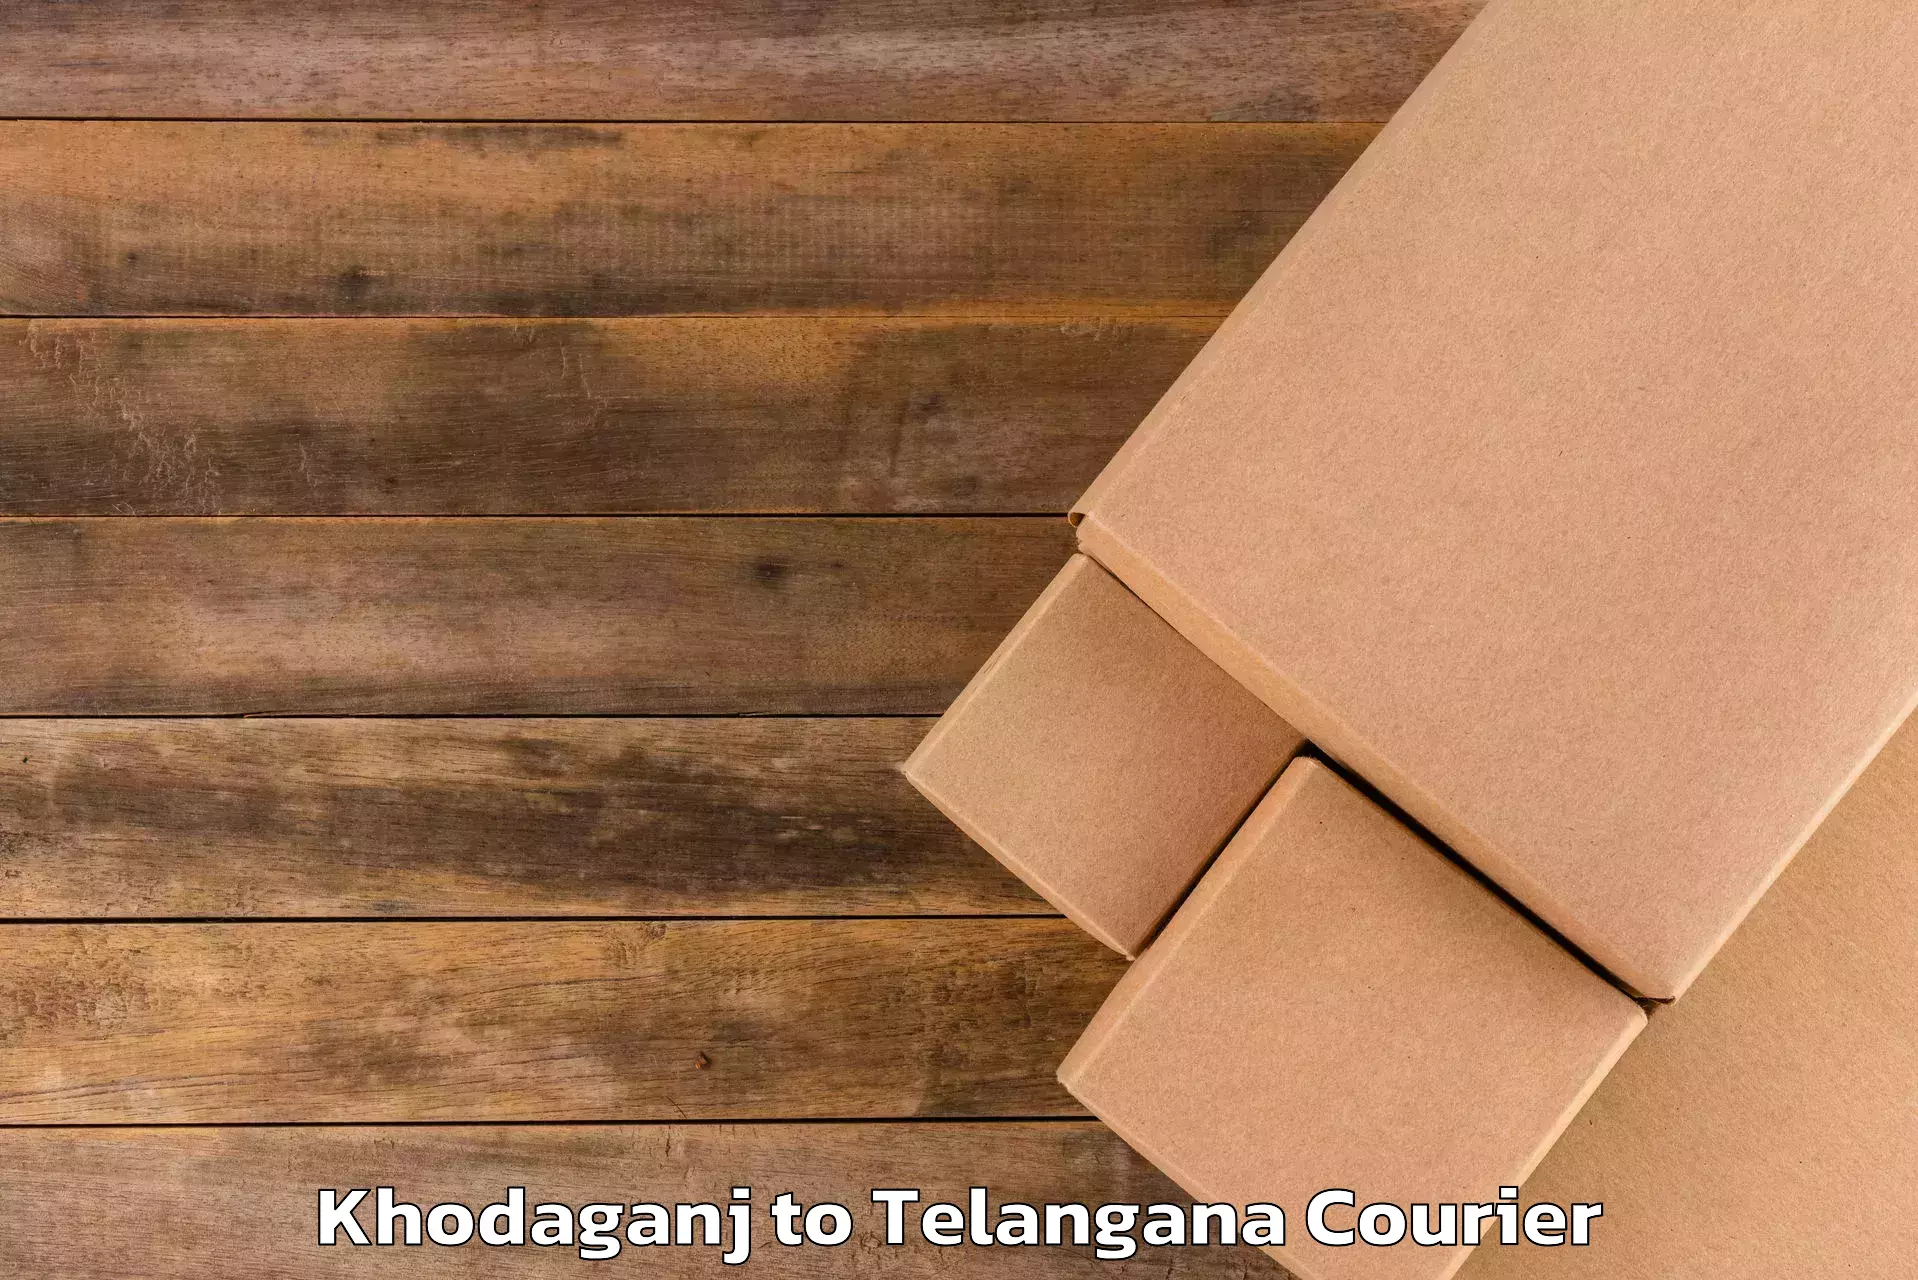 Luggage transit service Khodaganj to Sikanderguda